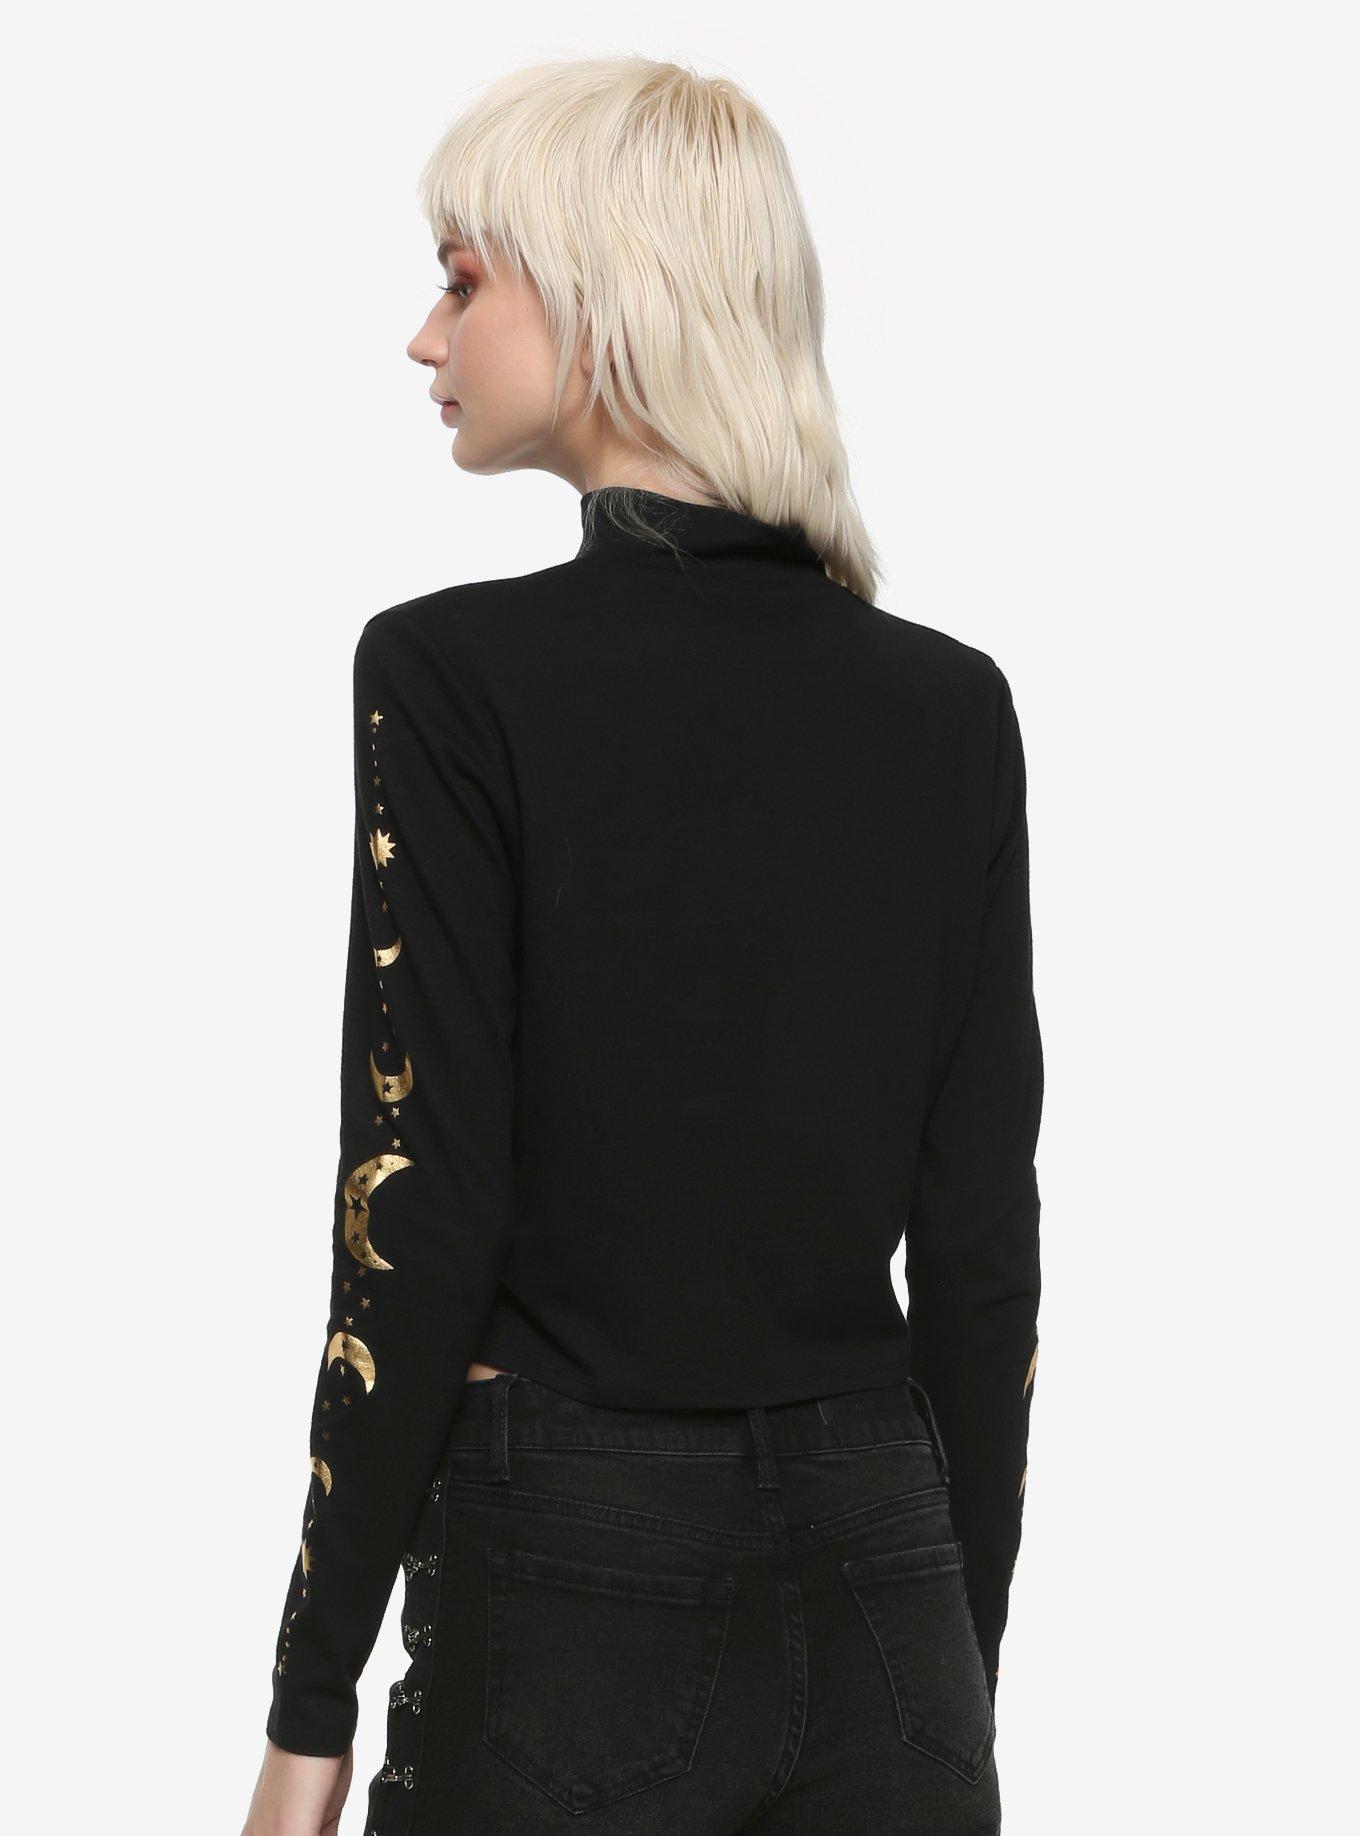 Black & Gold Moon Mock Neck Girls Long-Sleeve T-Shirt, BLACK, alternate